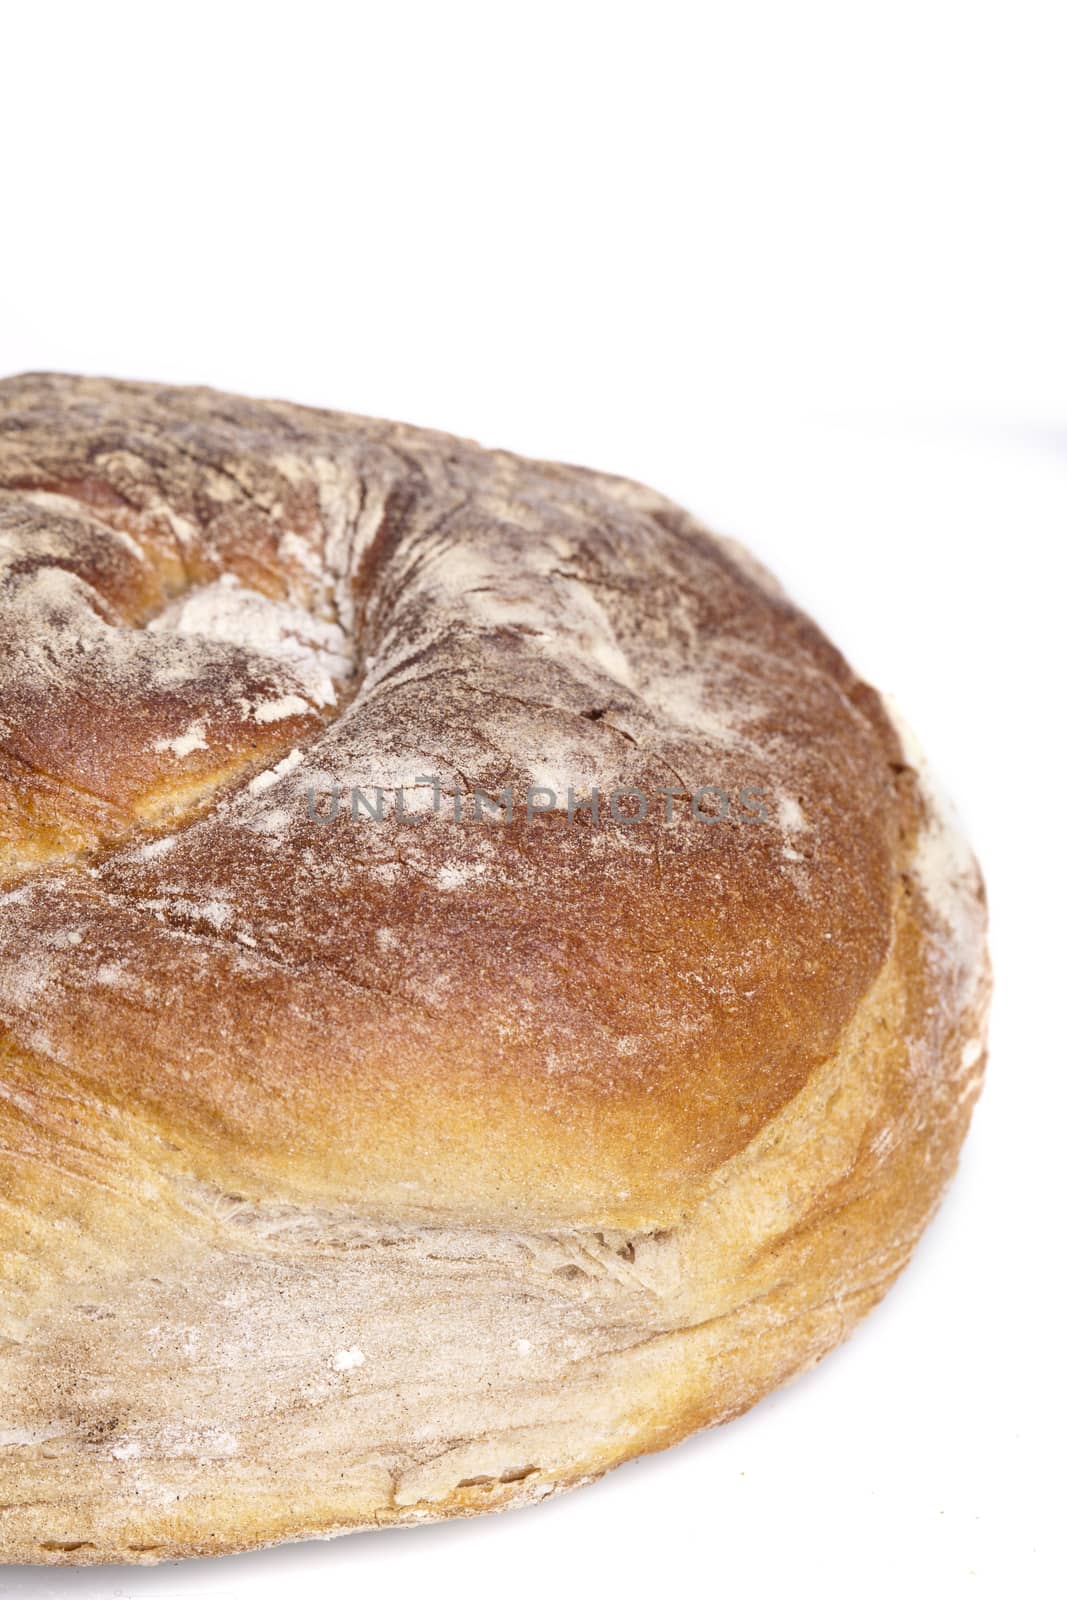 tasty fresh baked bread bun baguette natural food by juniart